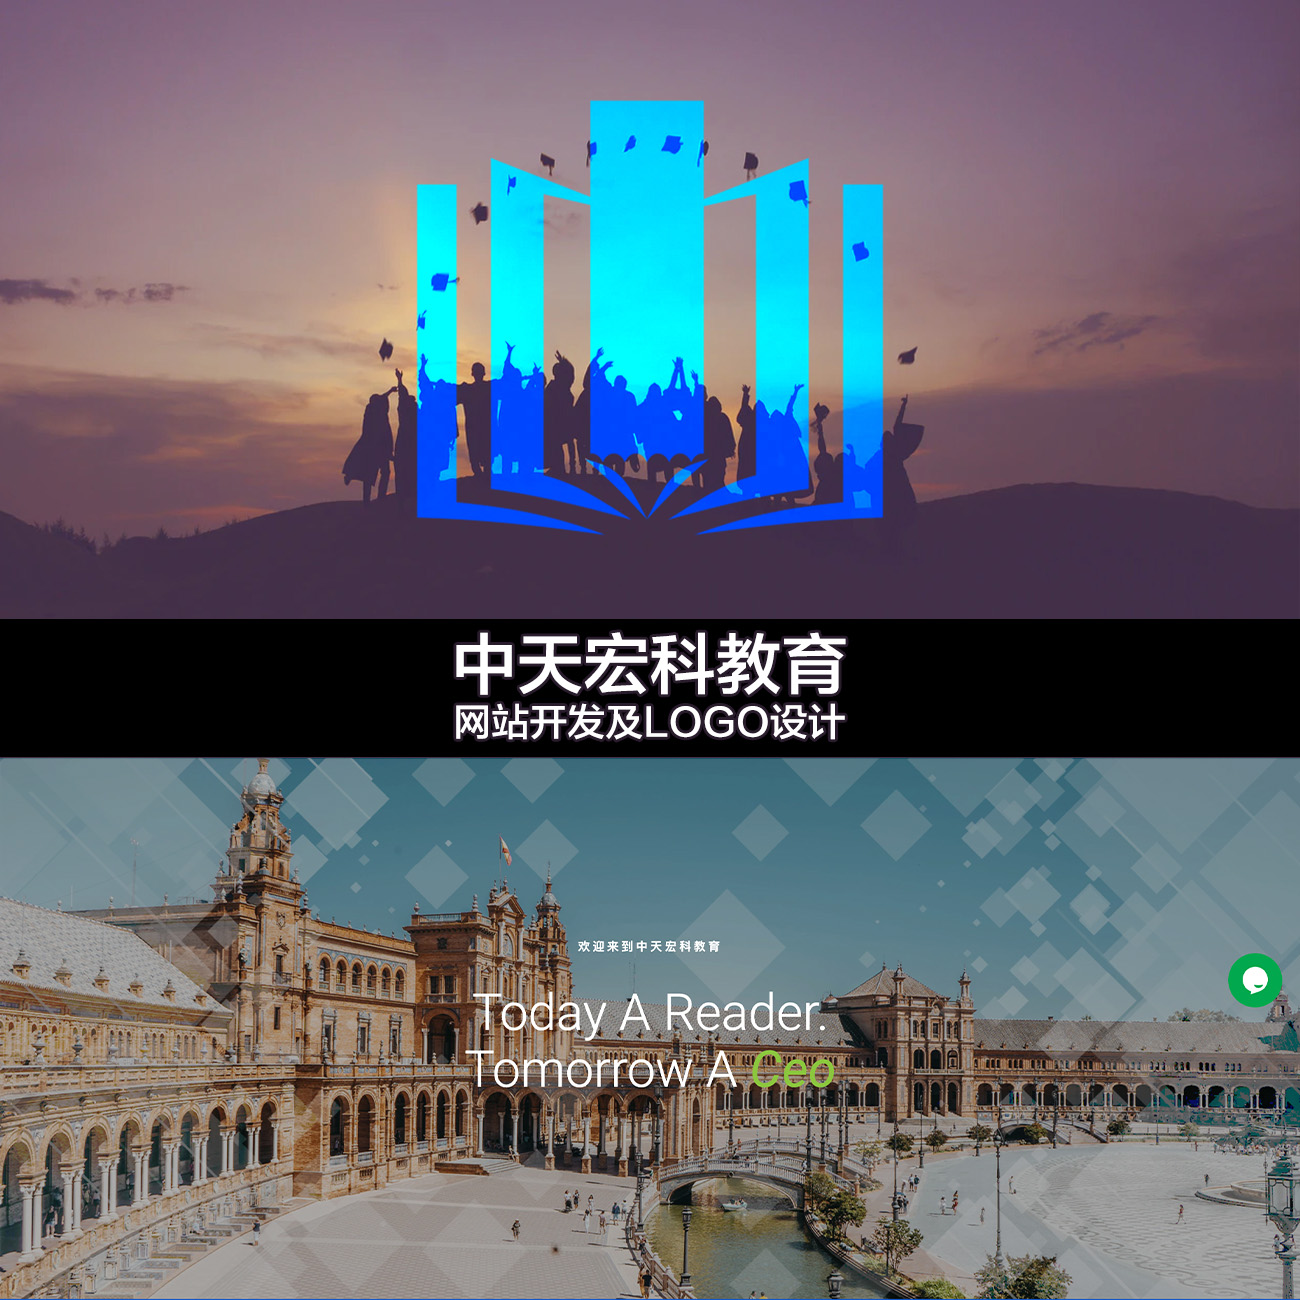 中天宏科教育 网站开发及LOGO设计